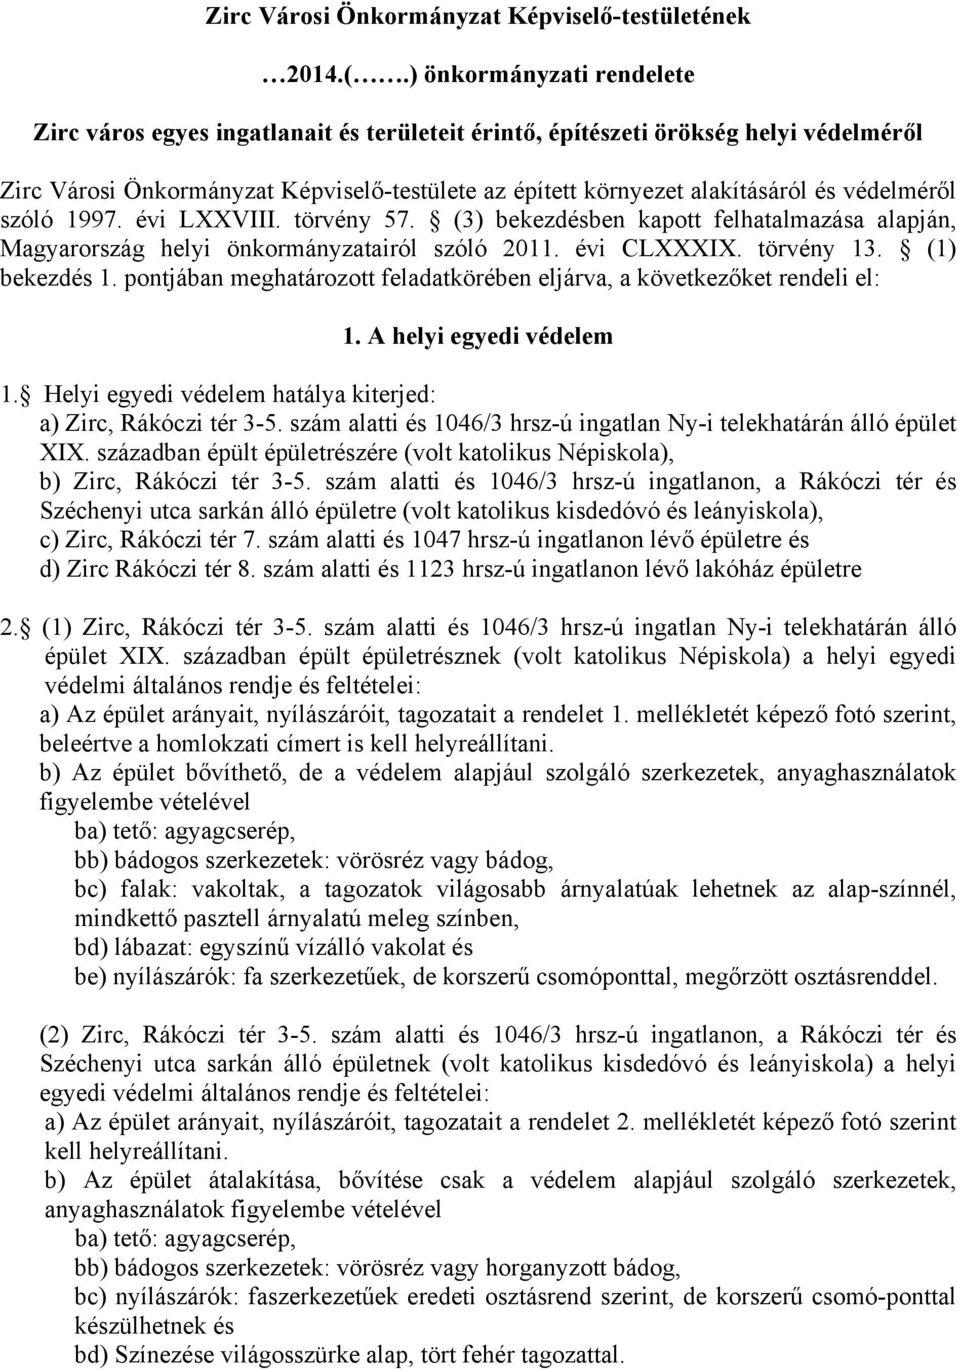 védelméről szóló 1997. évi LXXVIII. törvény 57. (3) bekezdésben kapott felhatalmazása alapján, Magyarország helyi önkormányzatairól szóló 2011. évi CLXXXIX. törvény 13. (1) bekezdés 1.